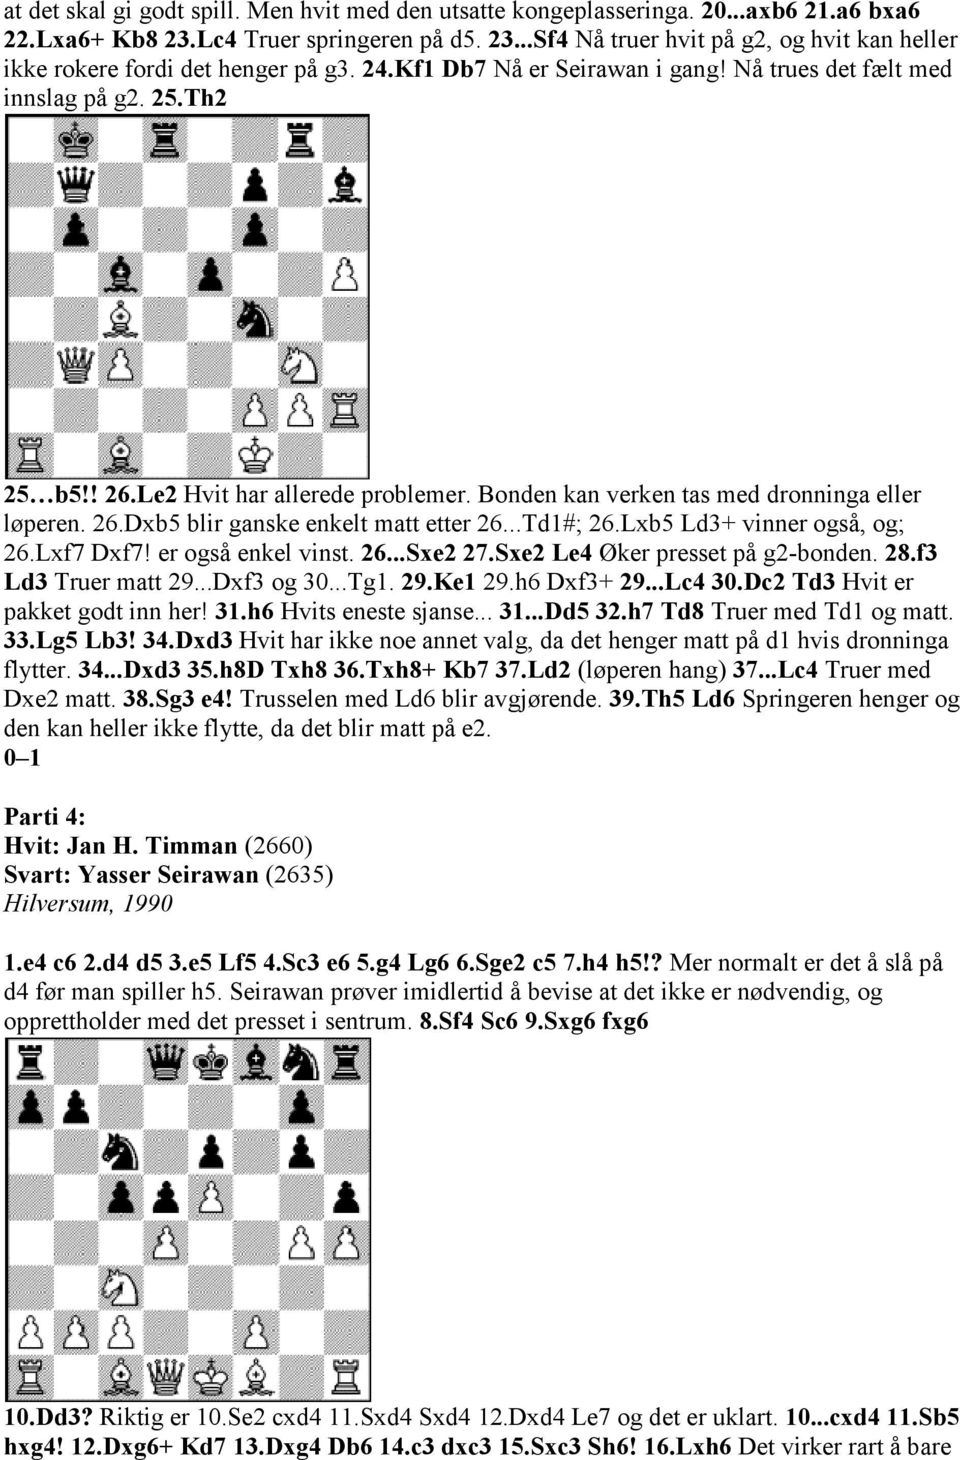 ..Td1#; 26.Lxb5 Ld3+ vinner også, og; 26.Lxf7 Dxf7! er også enkel vinst. 26...Sxe2 27.Sxe2 Le4 Øker presset på g2-bonden. 28.f3 Ld3 Truer matt 29...Dxf3 og 30...Tg1. 29.Ke1 29.h6 Dxf3+ 29...Lc4 30.